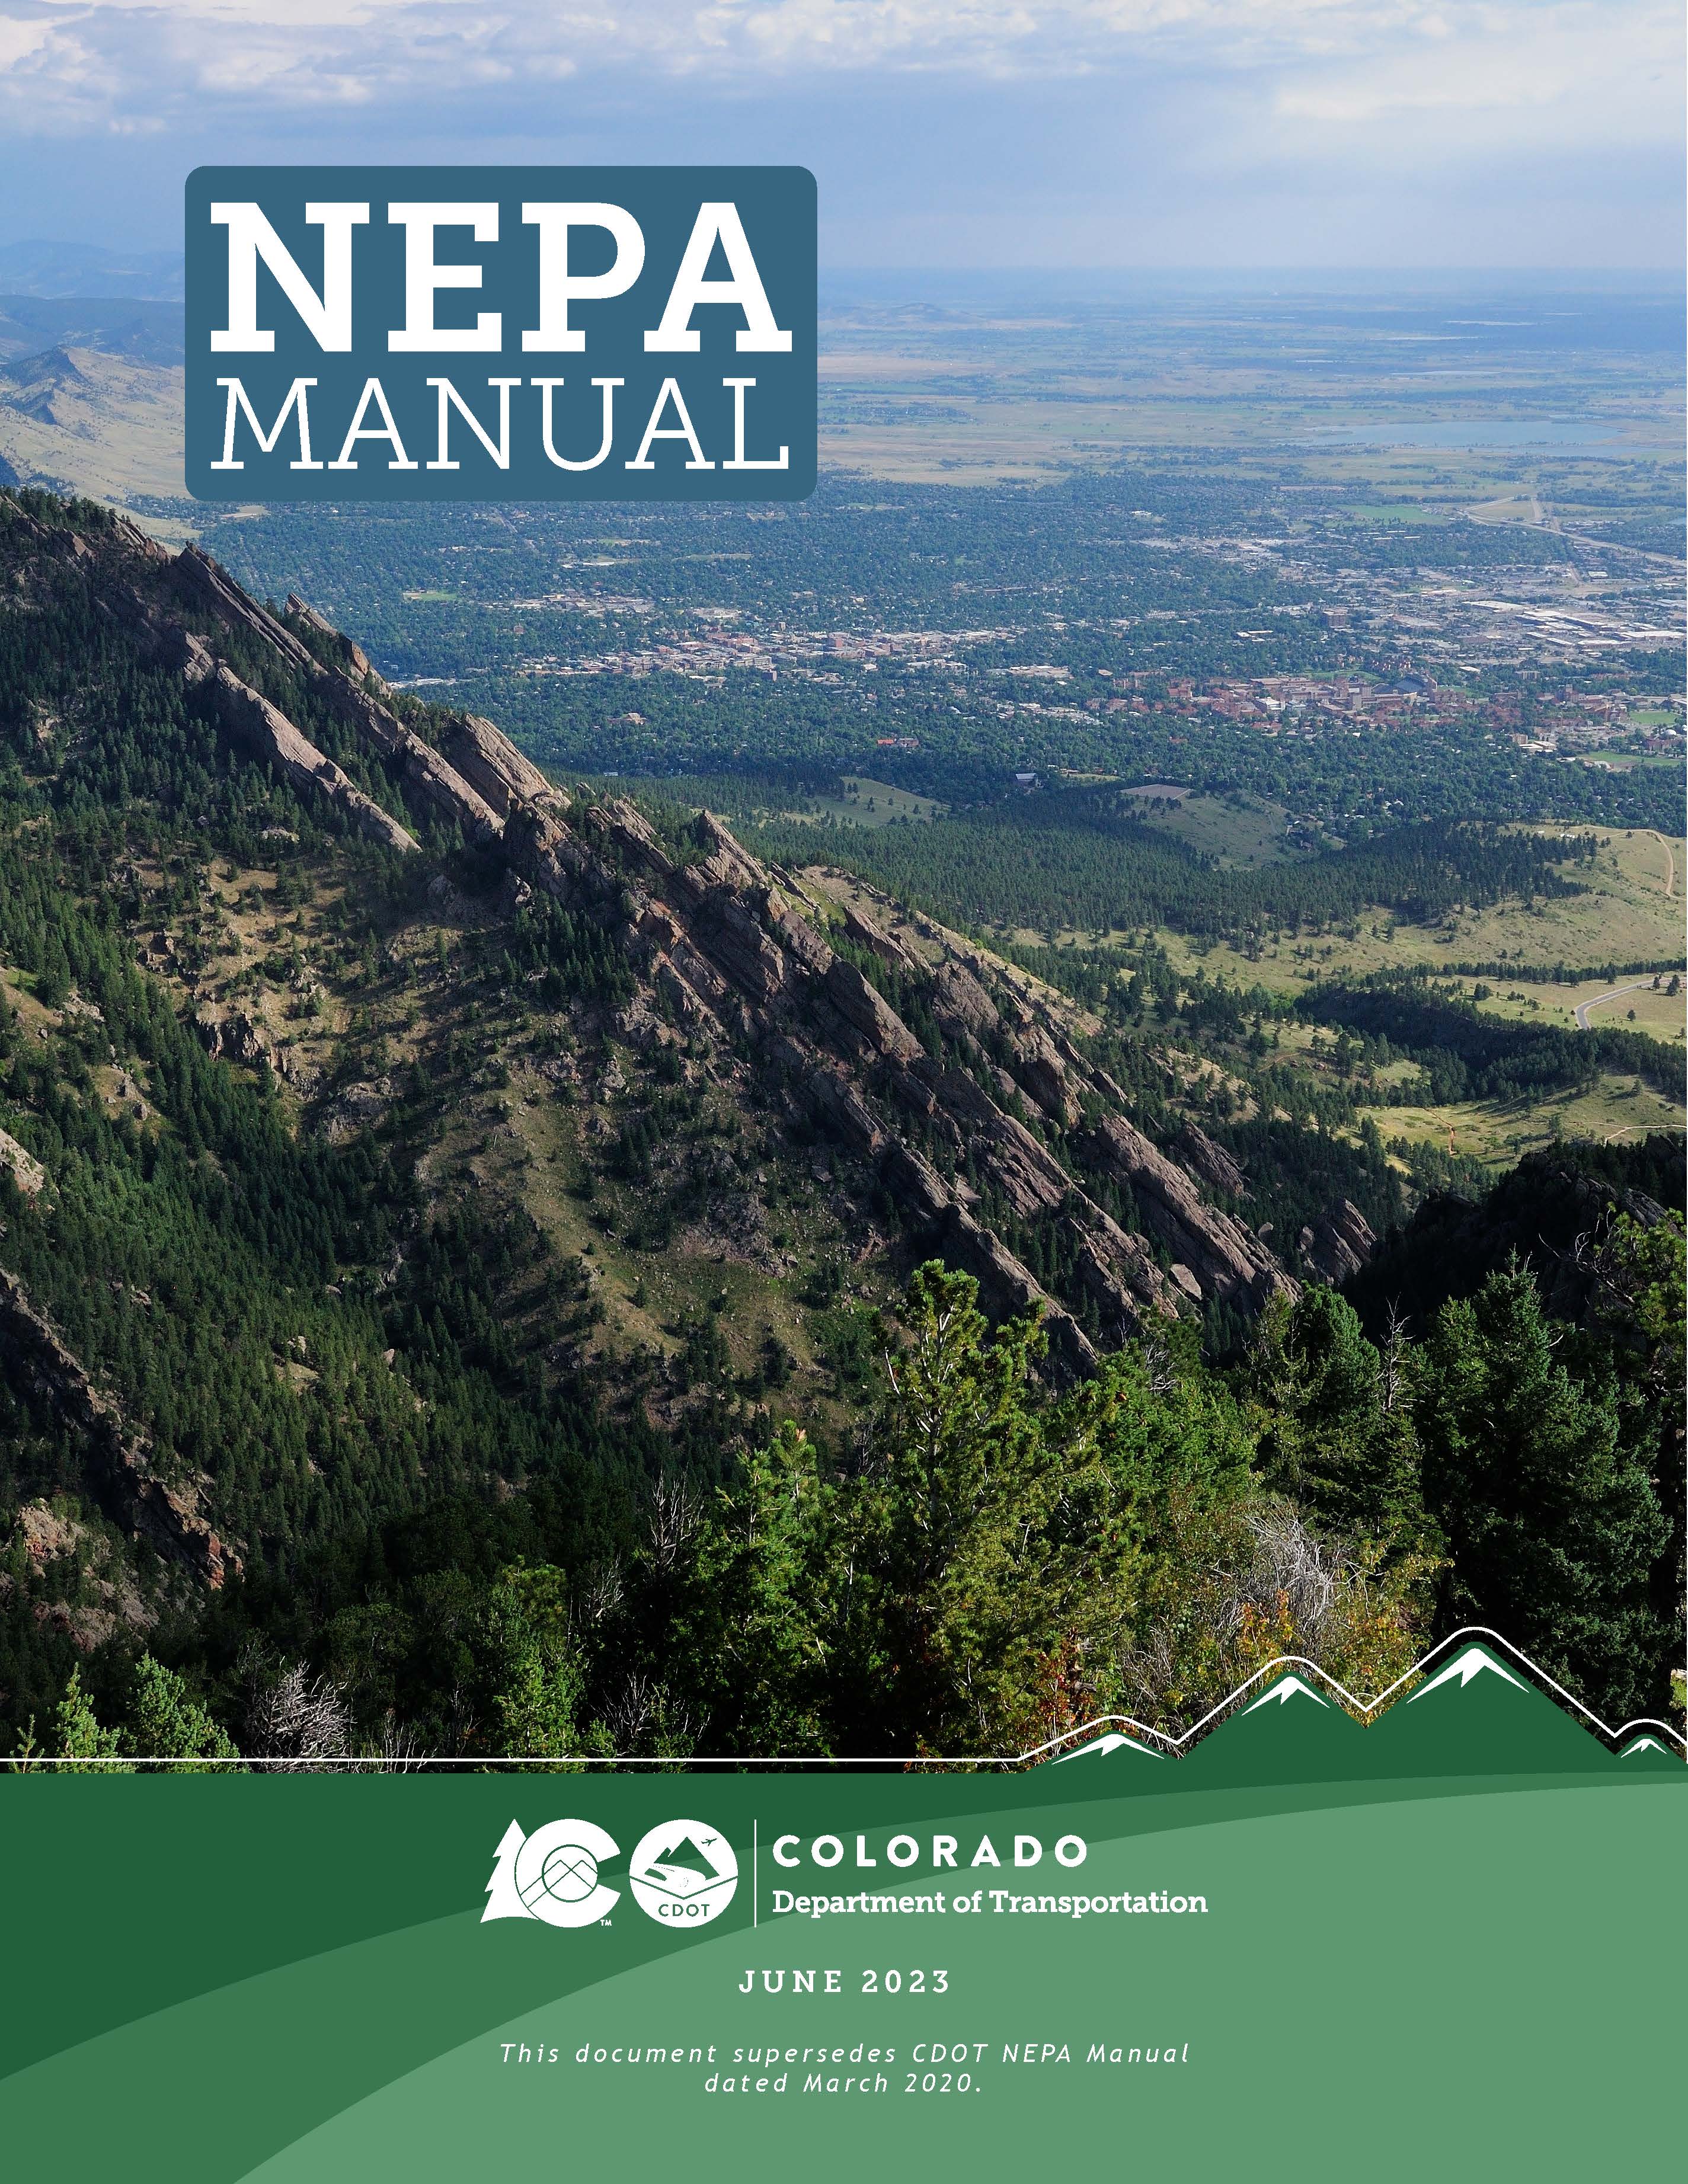 NEPA Manual Cover June 2023 detail image